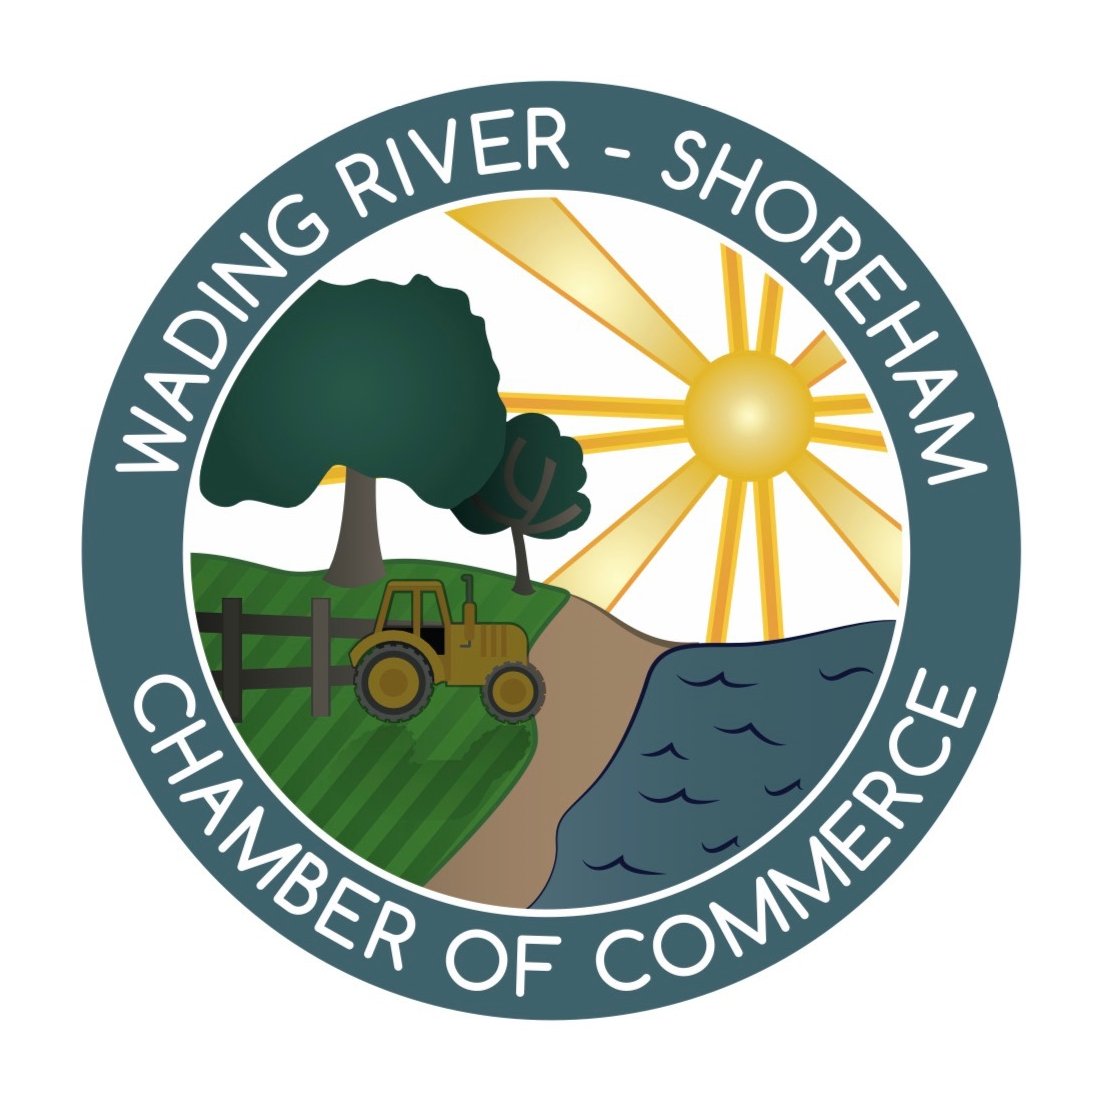 Wading River Shoreham Chamber of Commerce